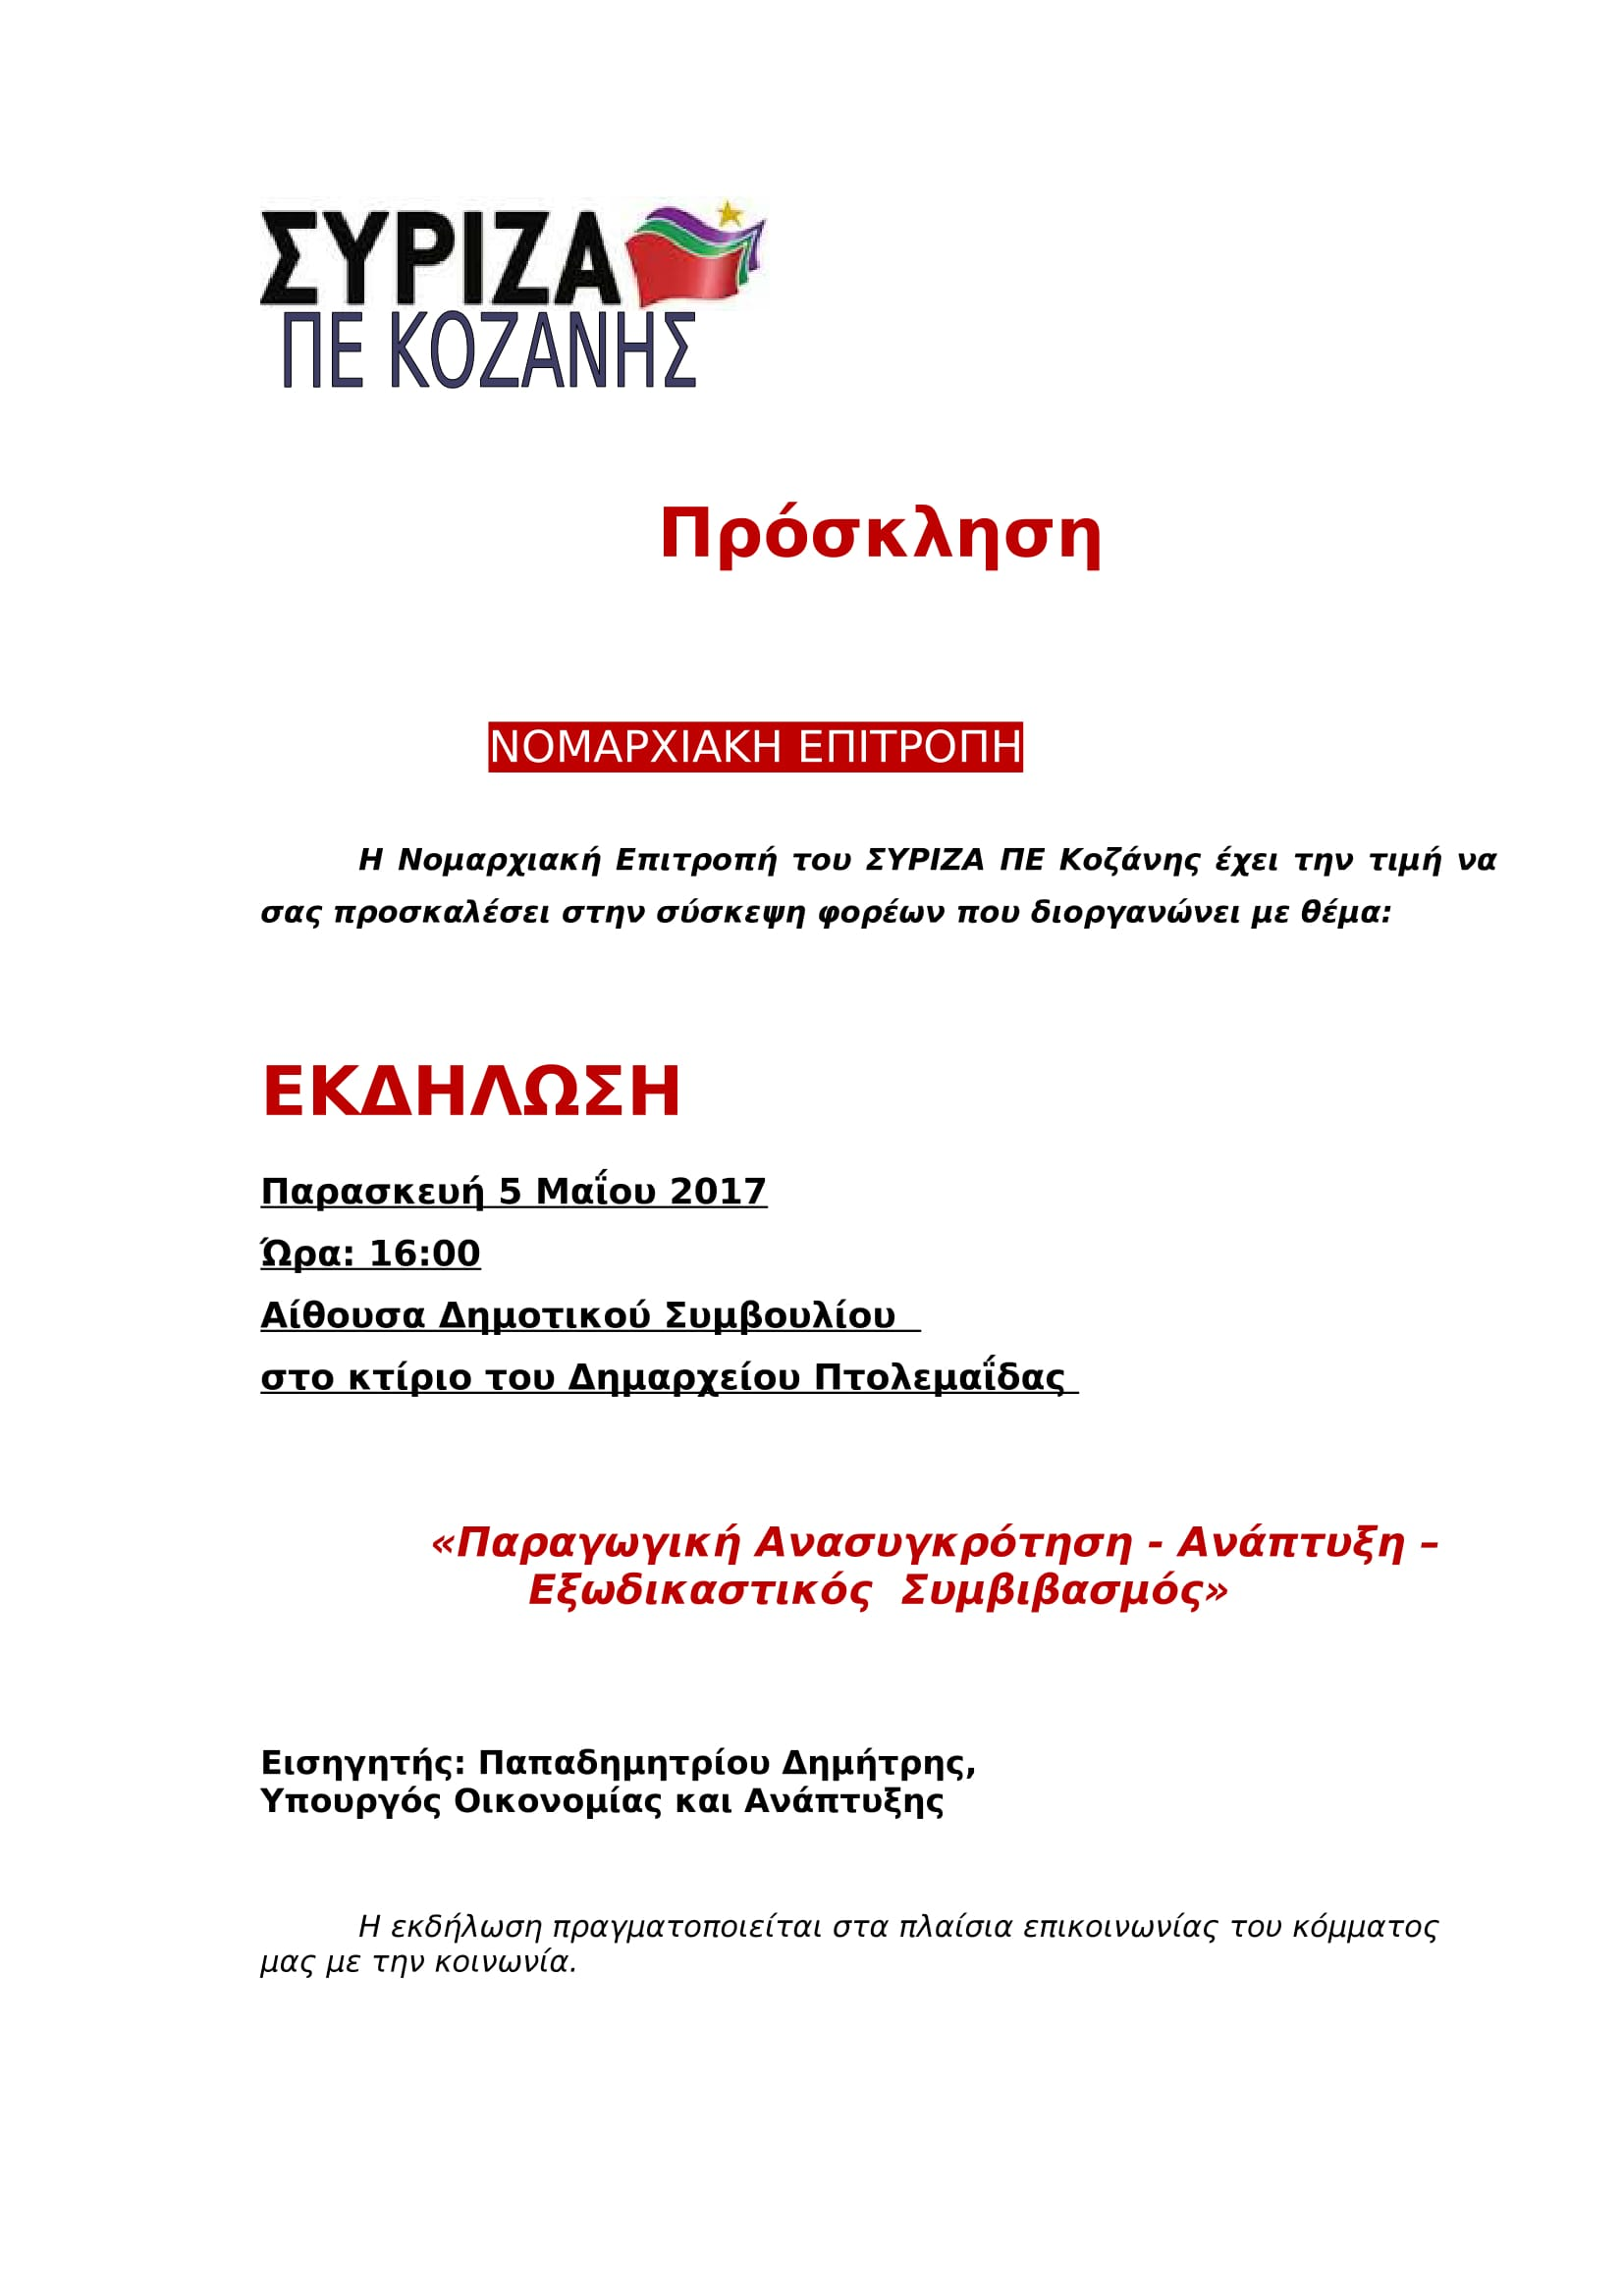 Ο Δημήτρης Παπαδημητρίου σε εκδήλωση της ΝΕ του ΣΥΡΙΖΑ ΠΕ Κοζάνης